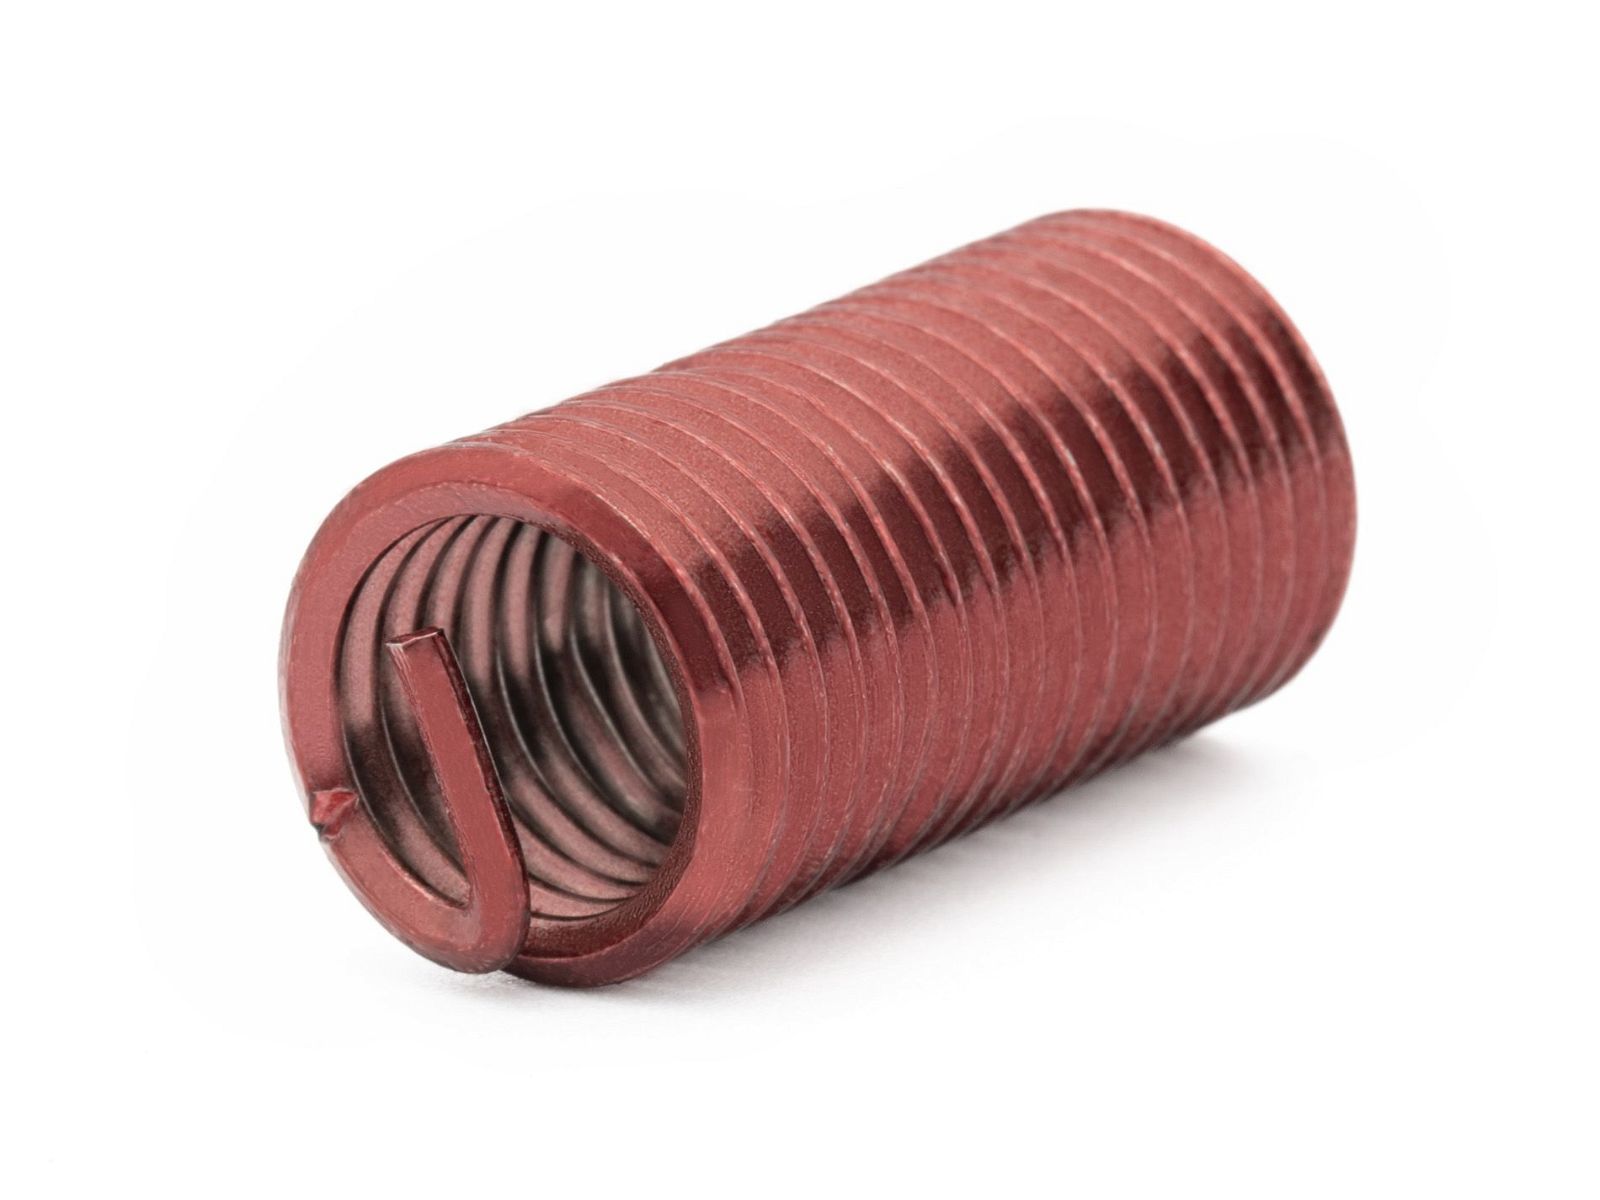 BaerCoil Wire Thread Inserts M 8 x 1.25 - 3.0 D (24 mm) - screw grip (screw locking) - 100 pcs.